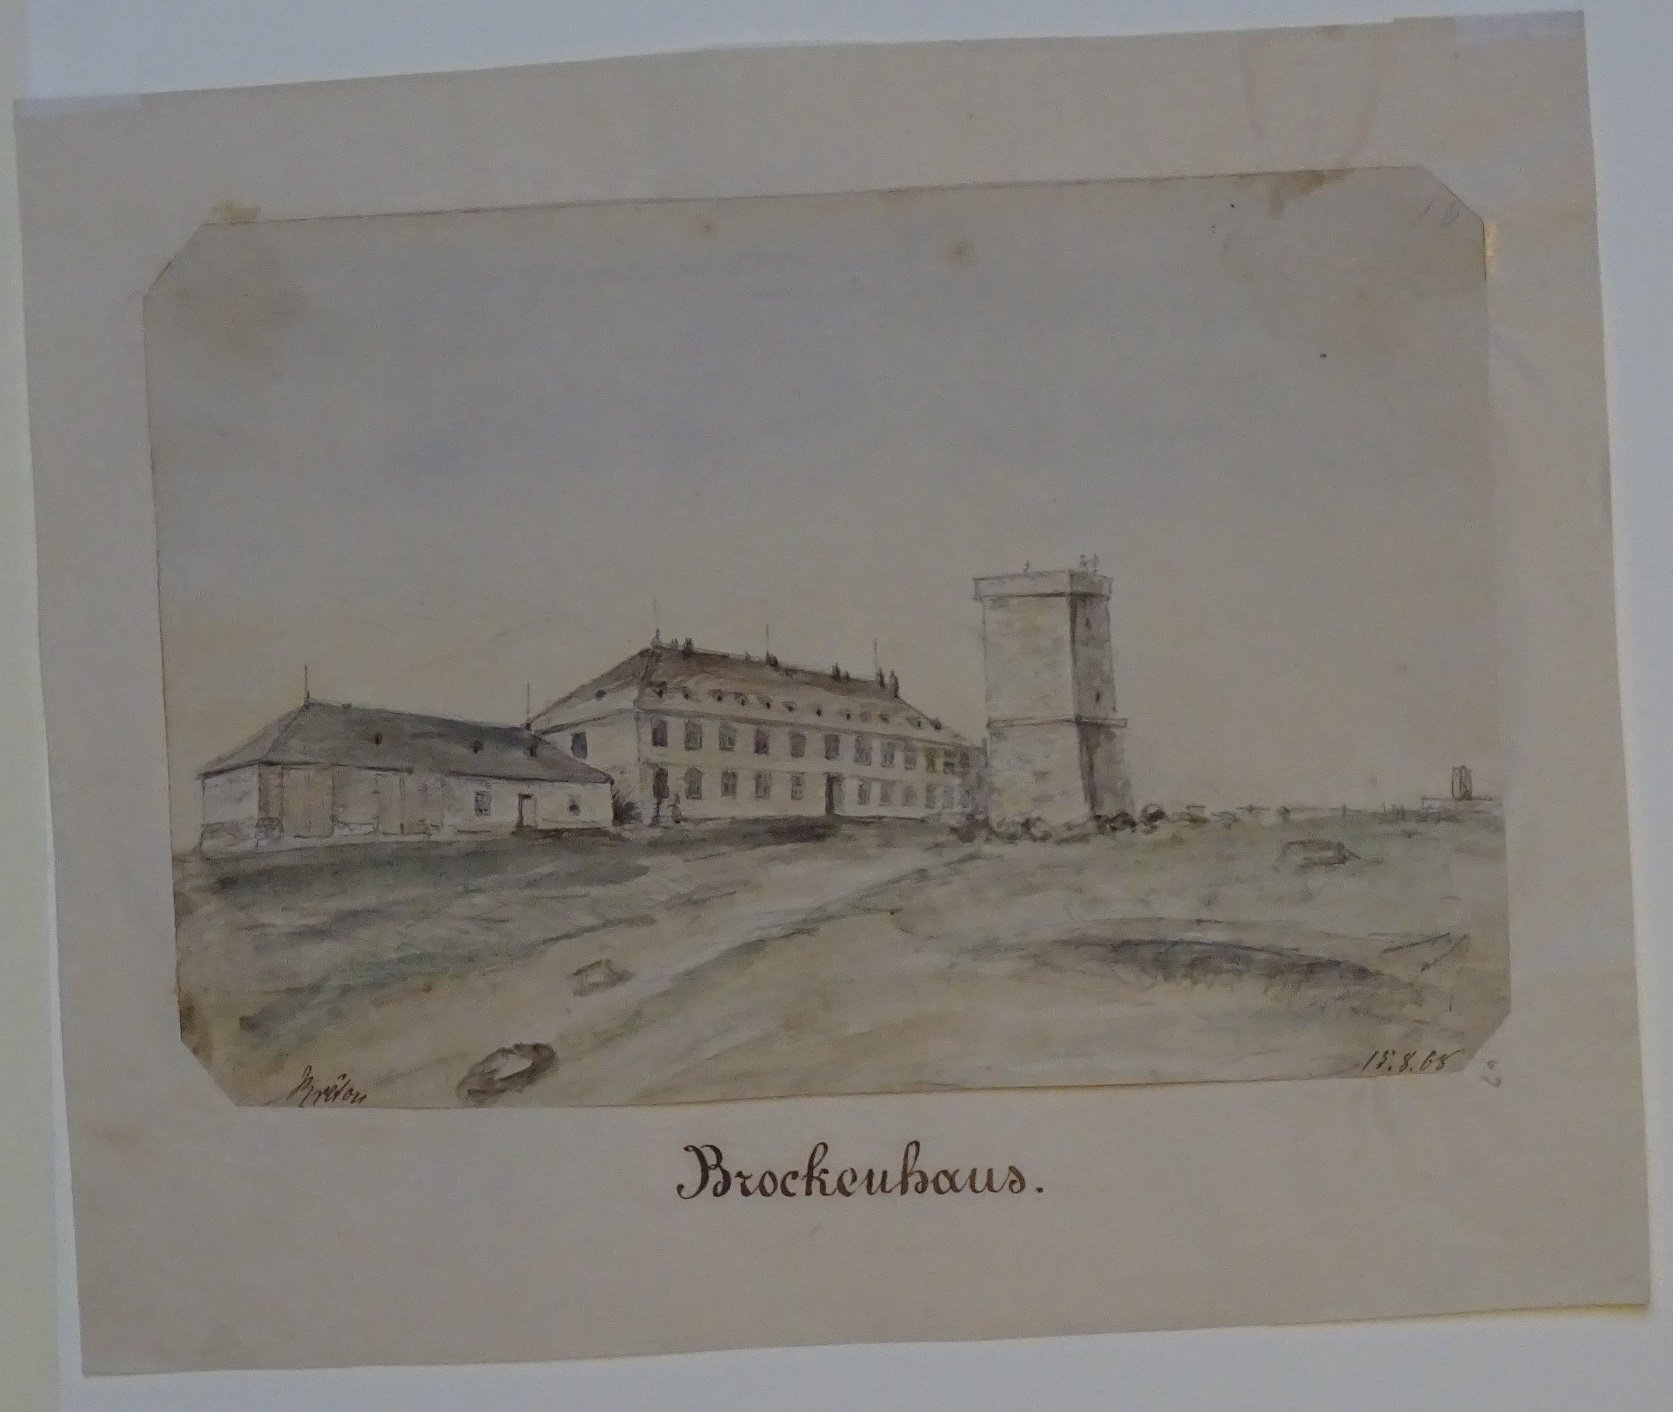 Brocken: Brockenhaus mit Aussichtsturm, gezeichnet von Breton, 18. August 1868 (Schloß Wernigerode GmbH RR-F)